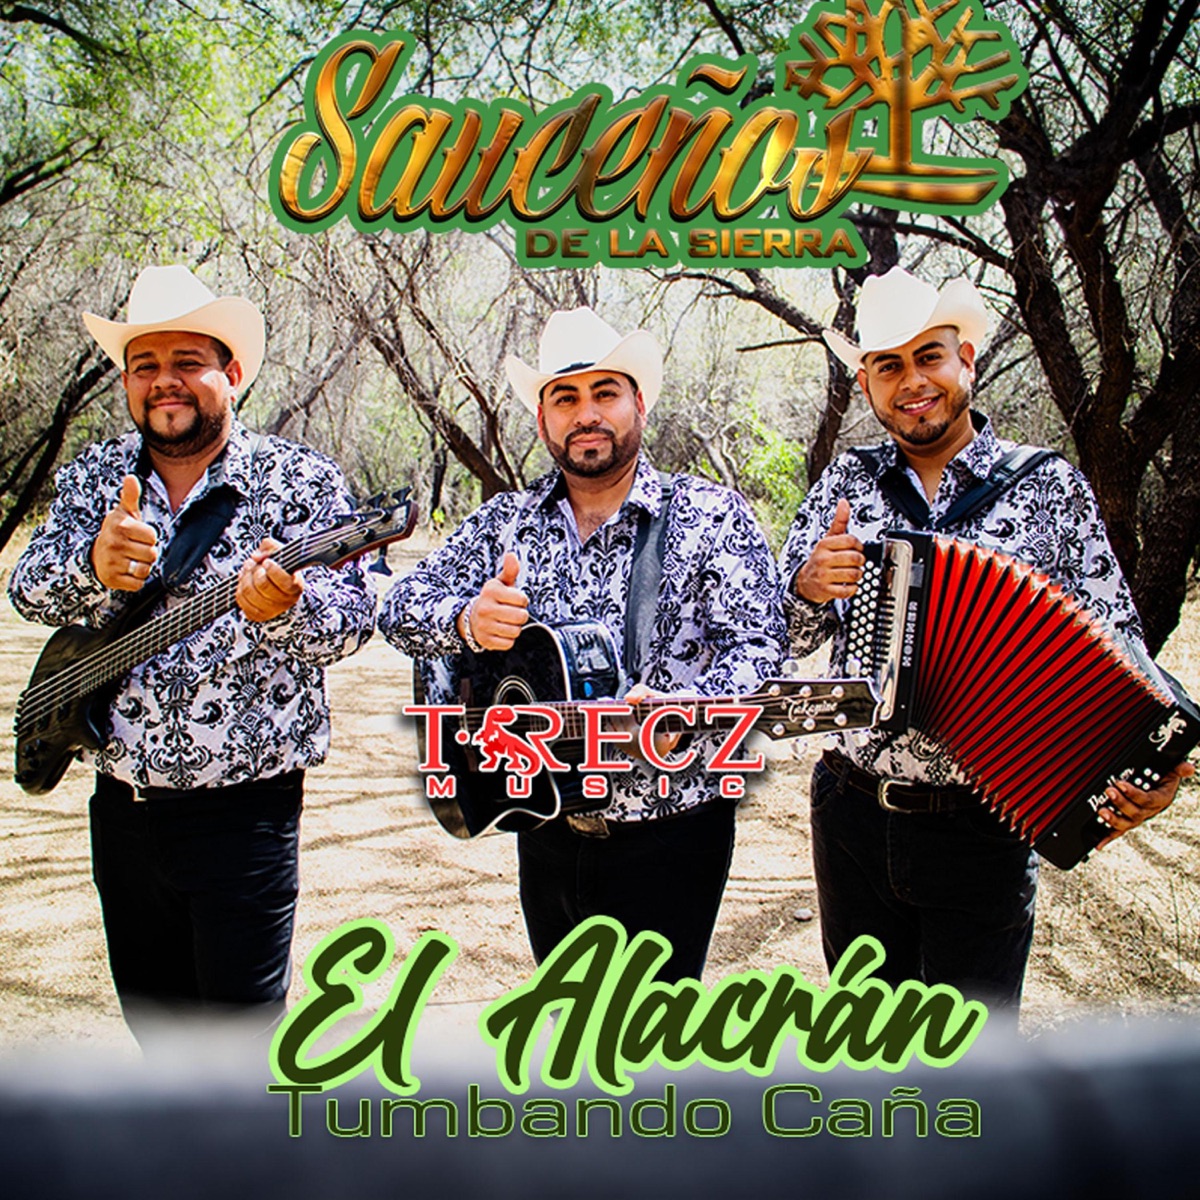 El Alacrán (Tumbando Caña) - Single - Album by Sauceños de la Sierra -  Apple Music